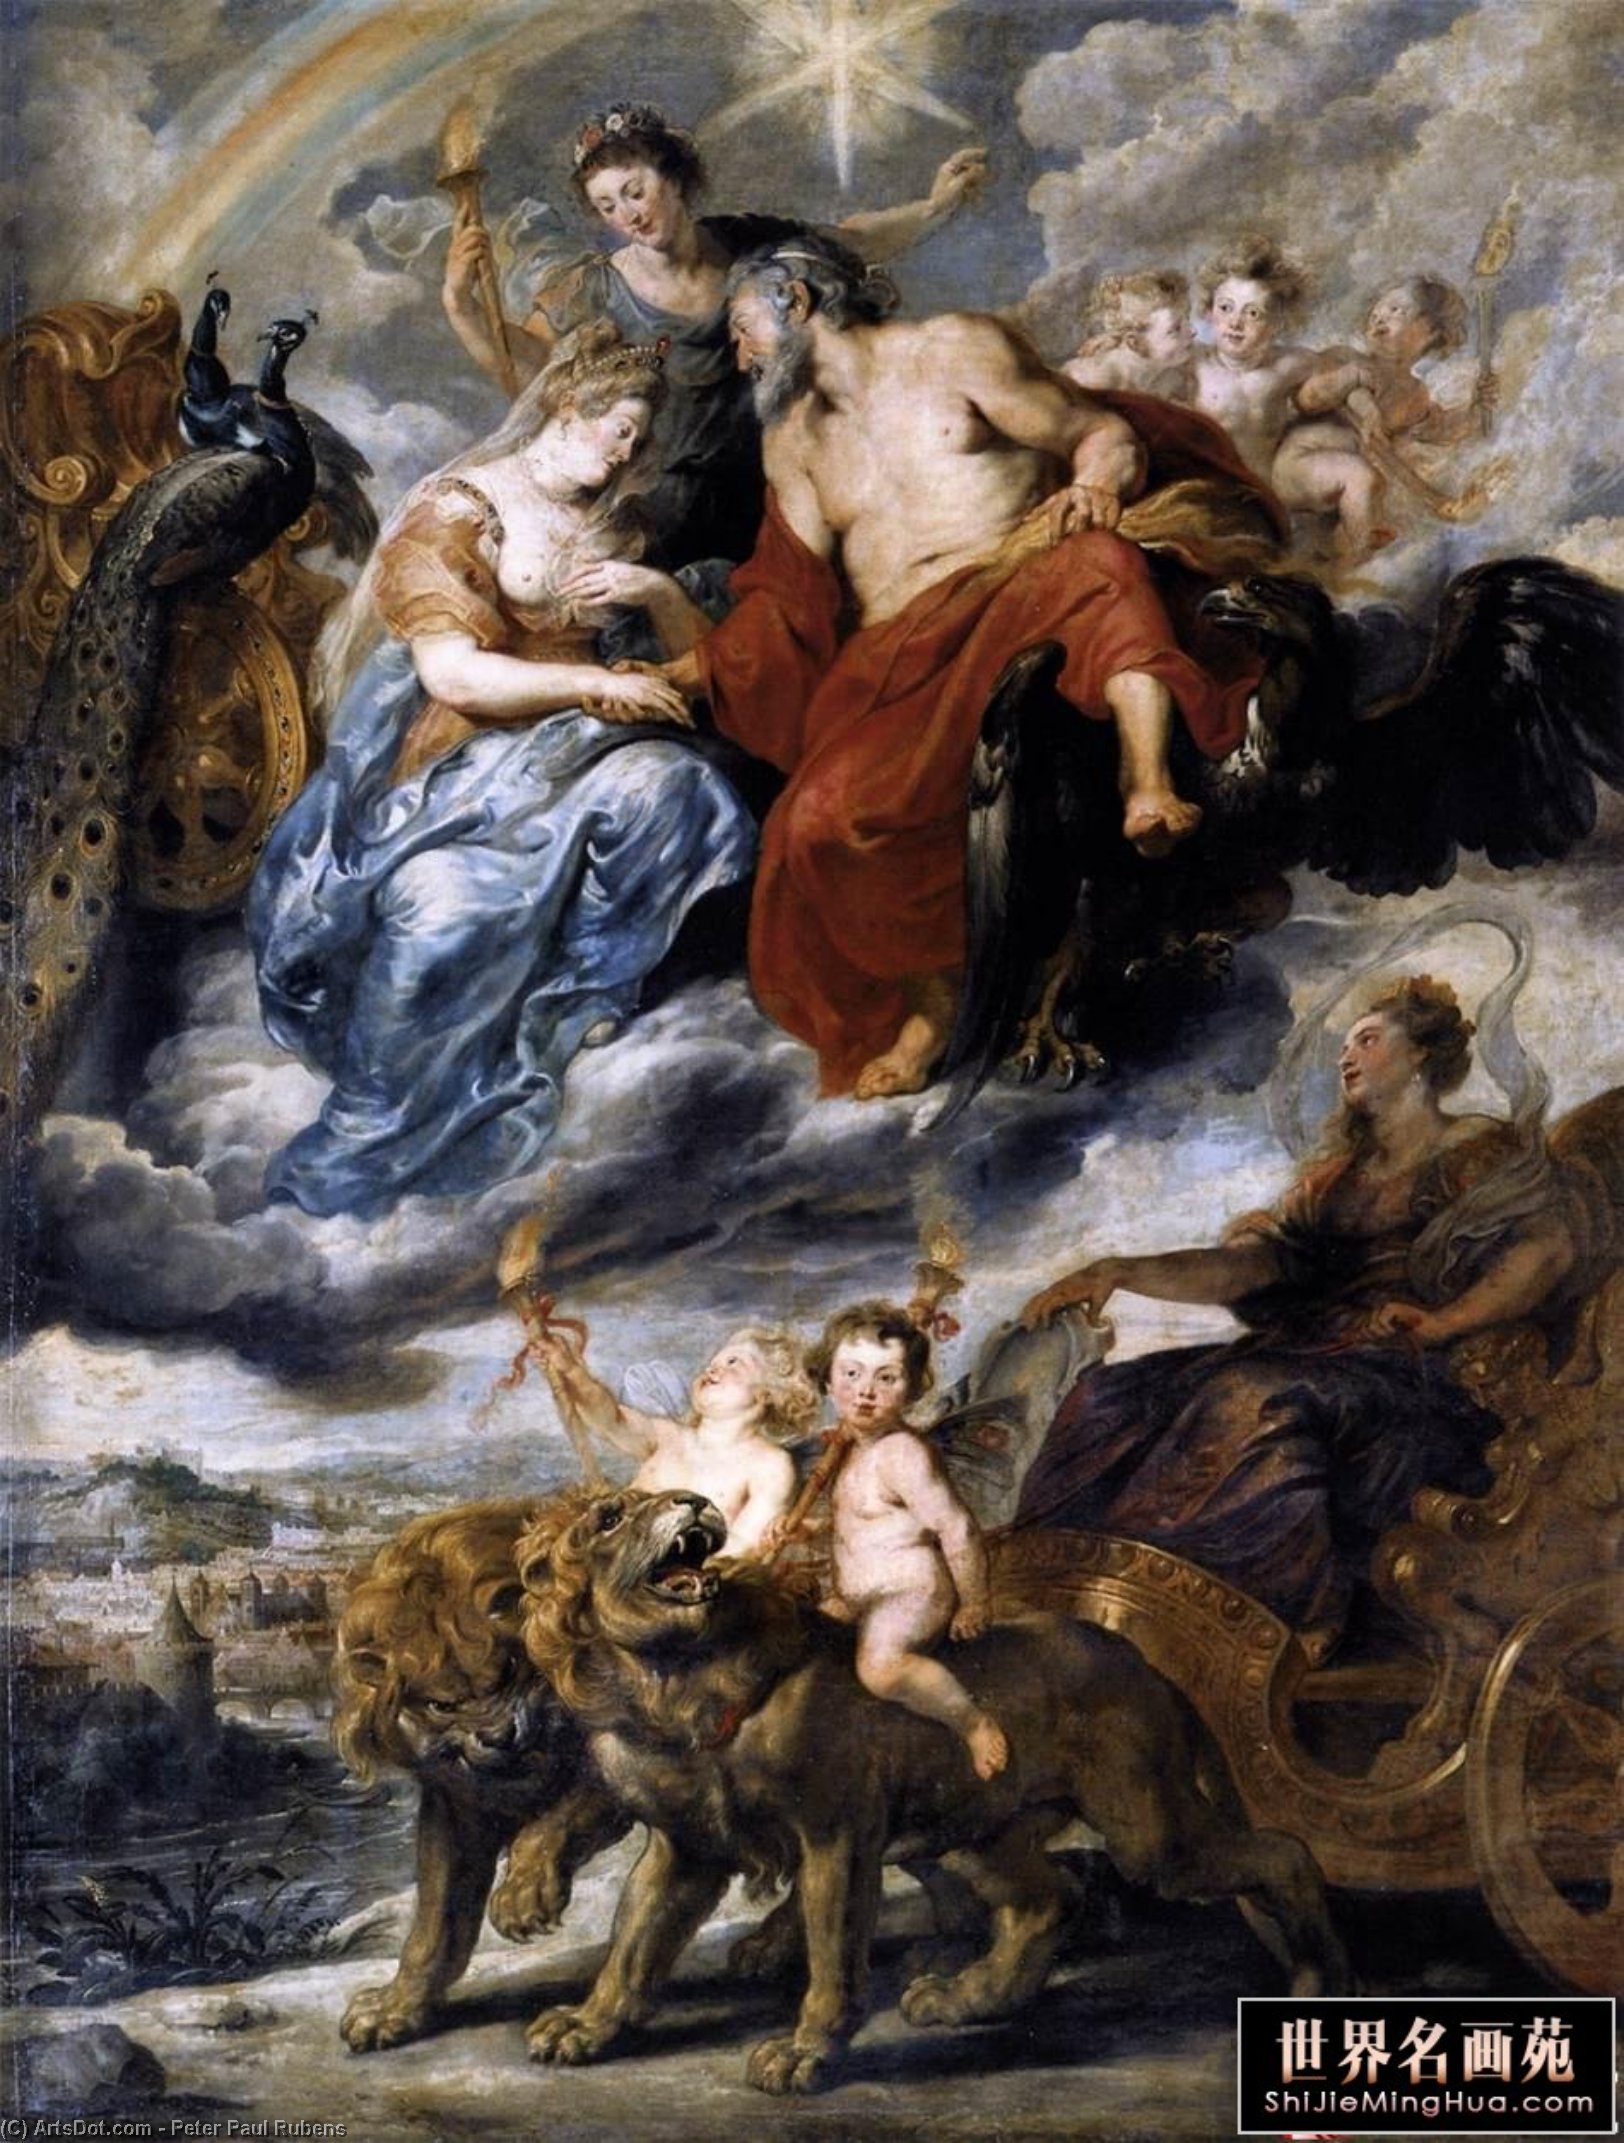 WikiOO.org - Енциклопедия за изящни изкуства - Живопис, Произведения на изкуството Peter Paul Rubens - The Meeting of Marie de M dicis and Henri IV at Lyon